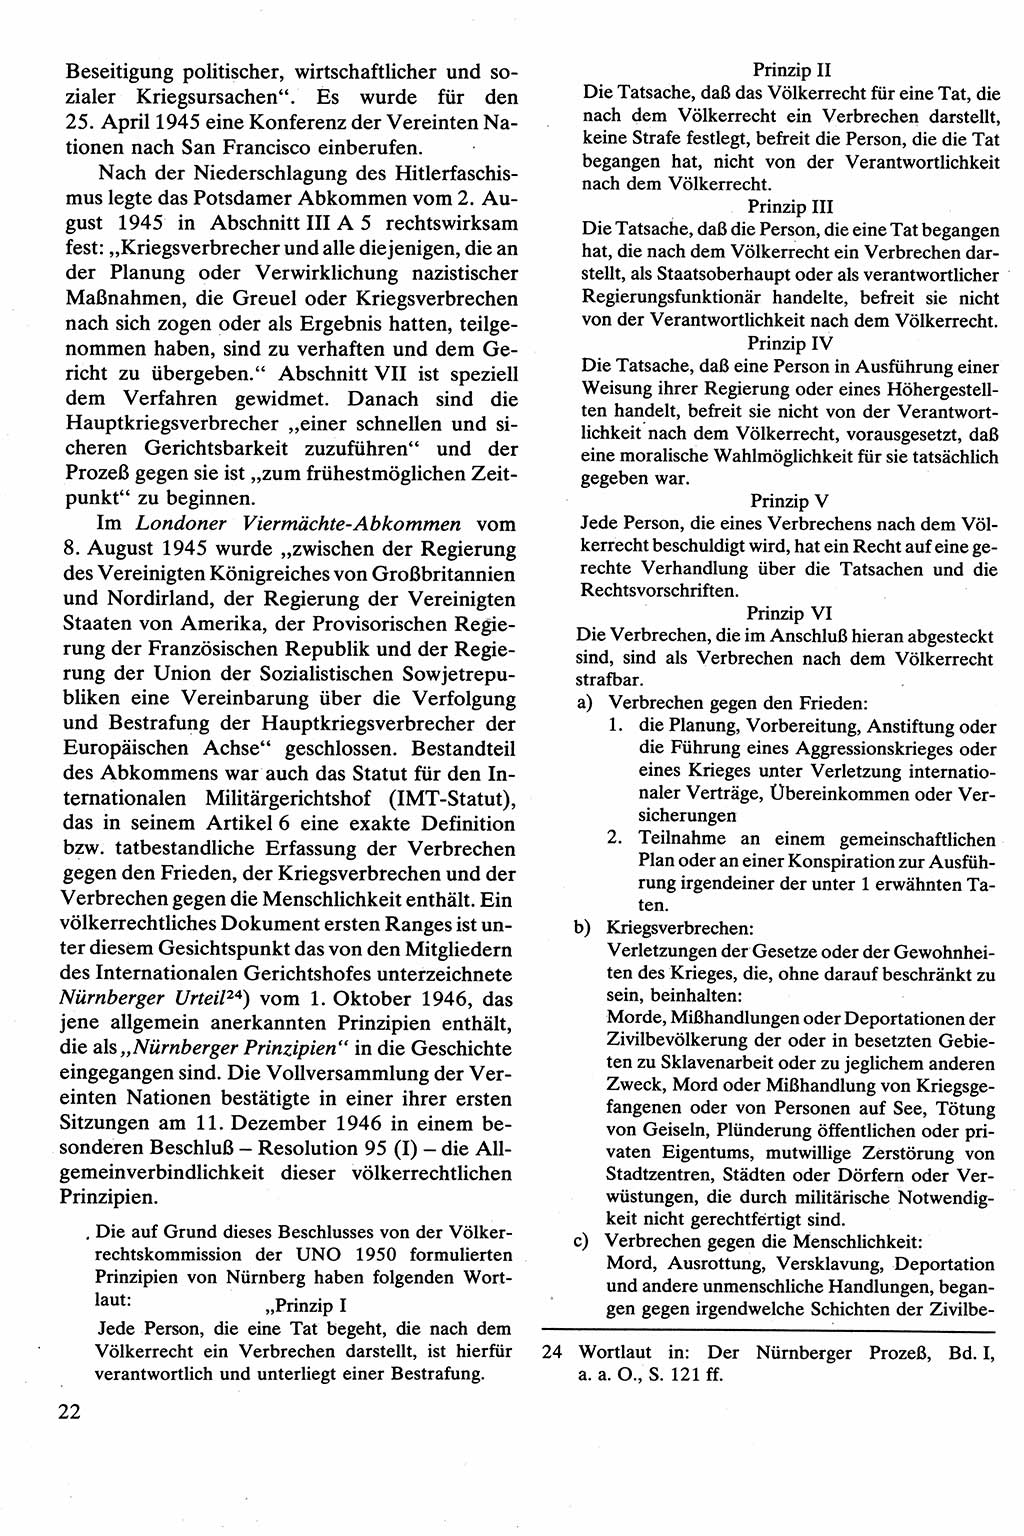 Strafrecht [Deutsche Demokratische Republik (DDR)], Besonderer Teil, Lehrbuch 1981, Seite 22 (Strafr. DDR BT Lb. 1981, S. 22)